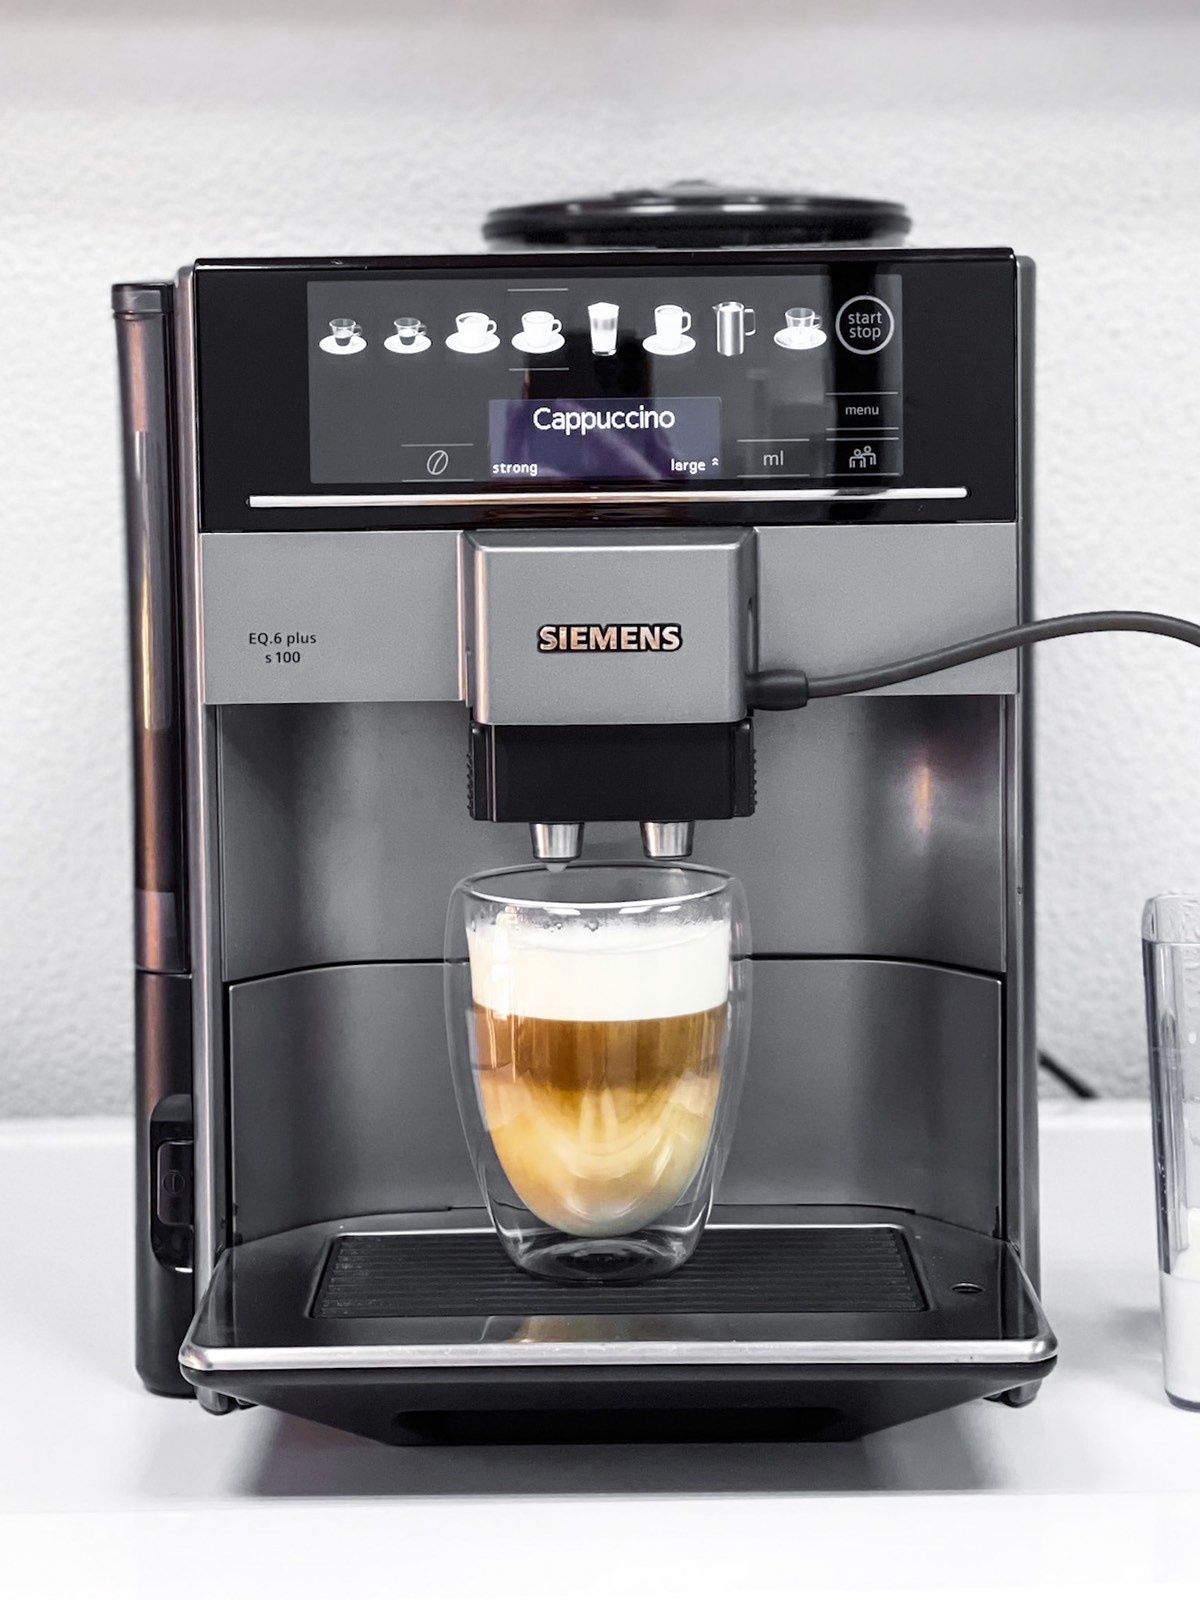 НОВА!!! Кофемашина Siemens EQ6 Plus Series 100 (кавоварка)